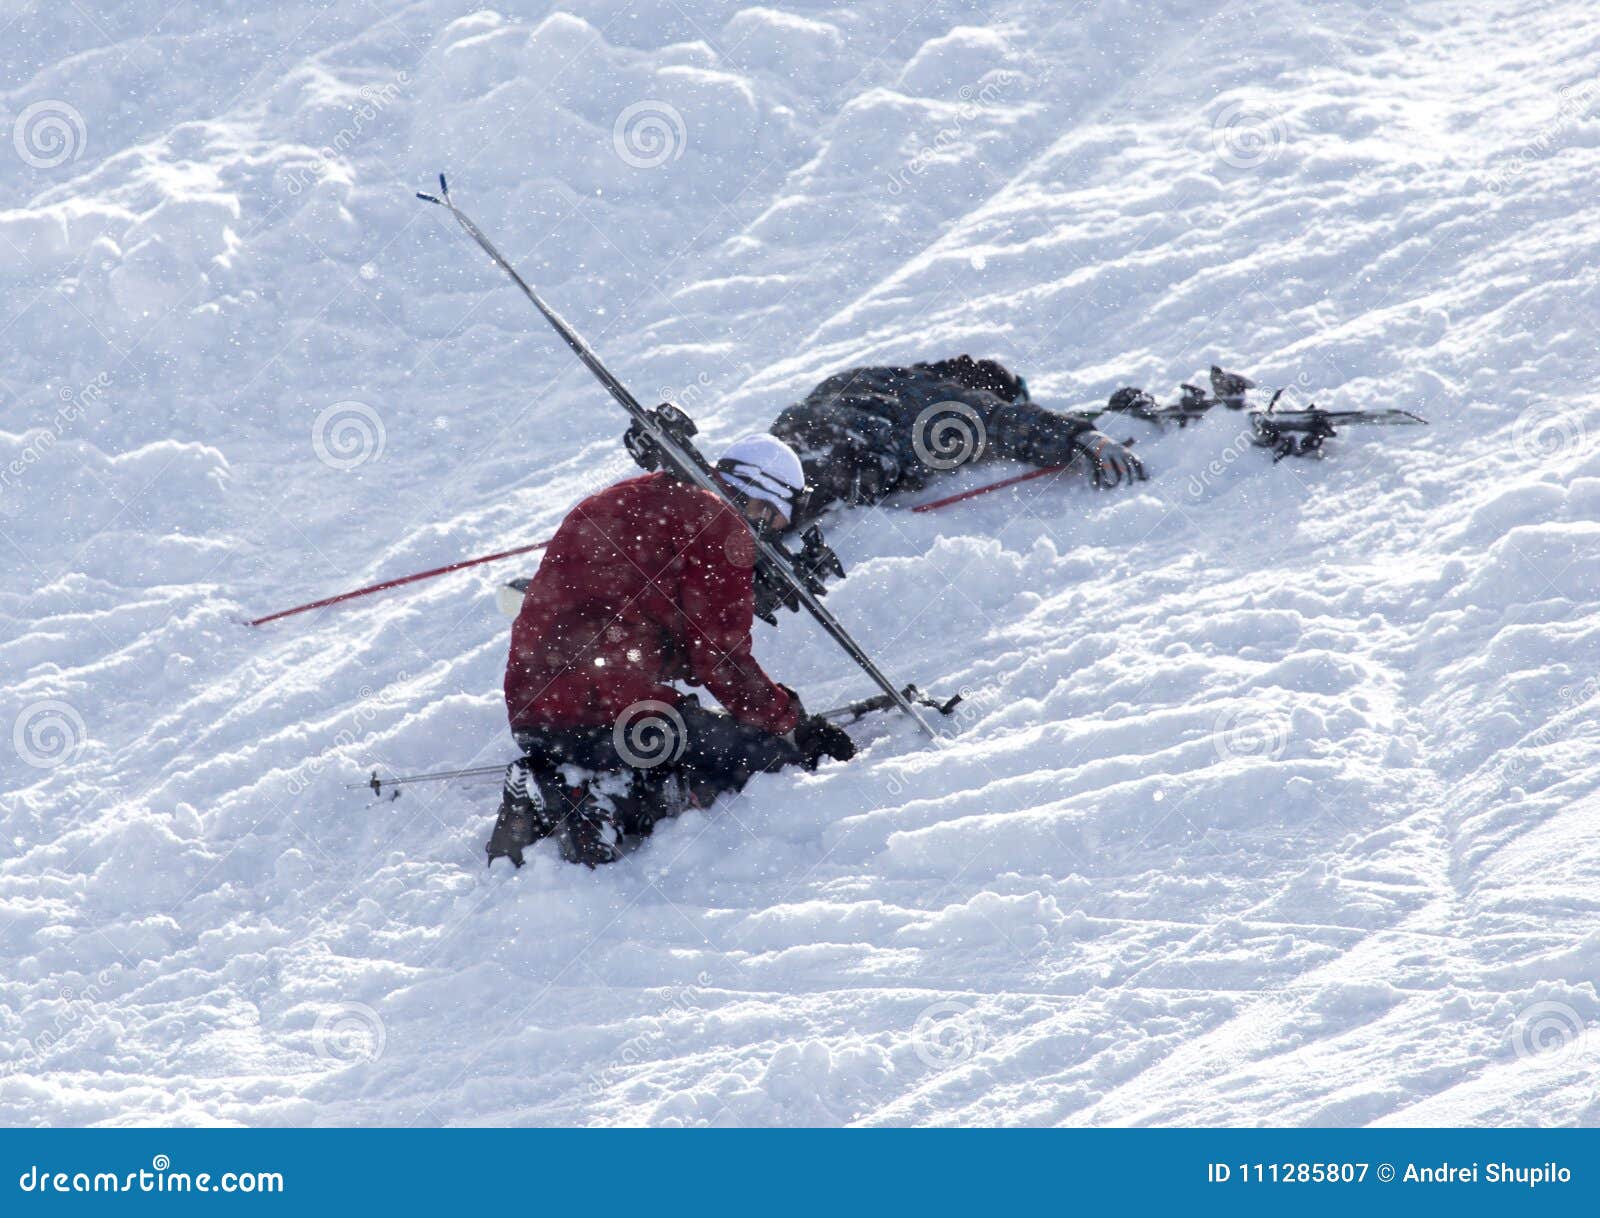 初次进滑雪场学习滑雪及拍摄（2）——摔倒图片-中关村在线摄影论坛